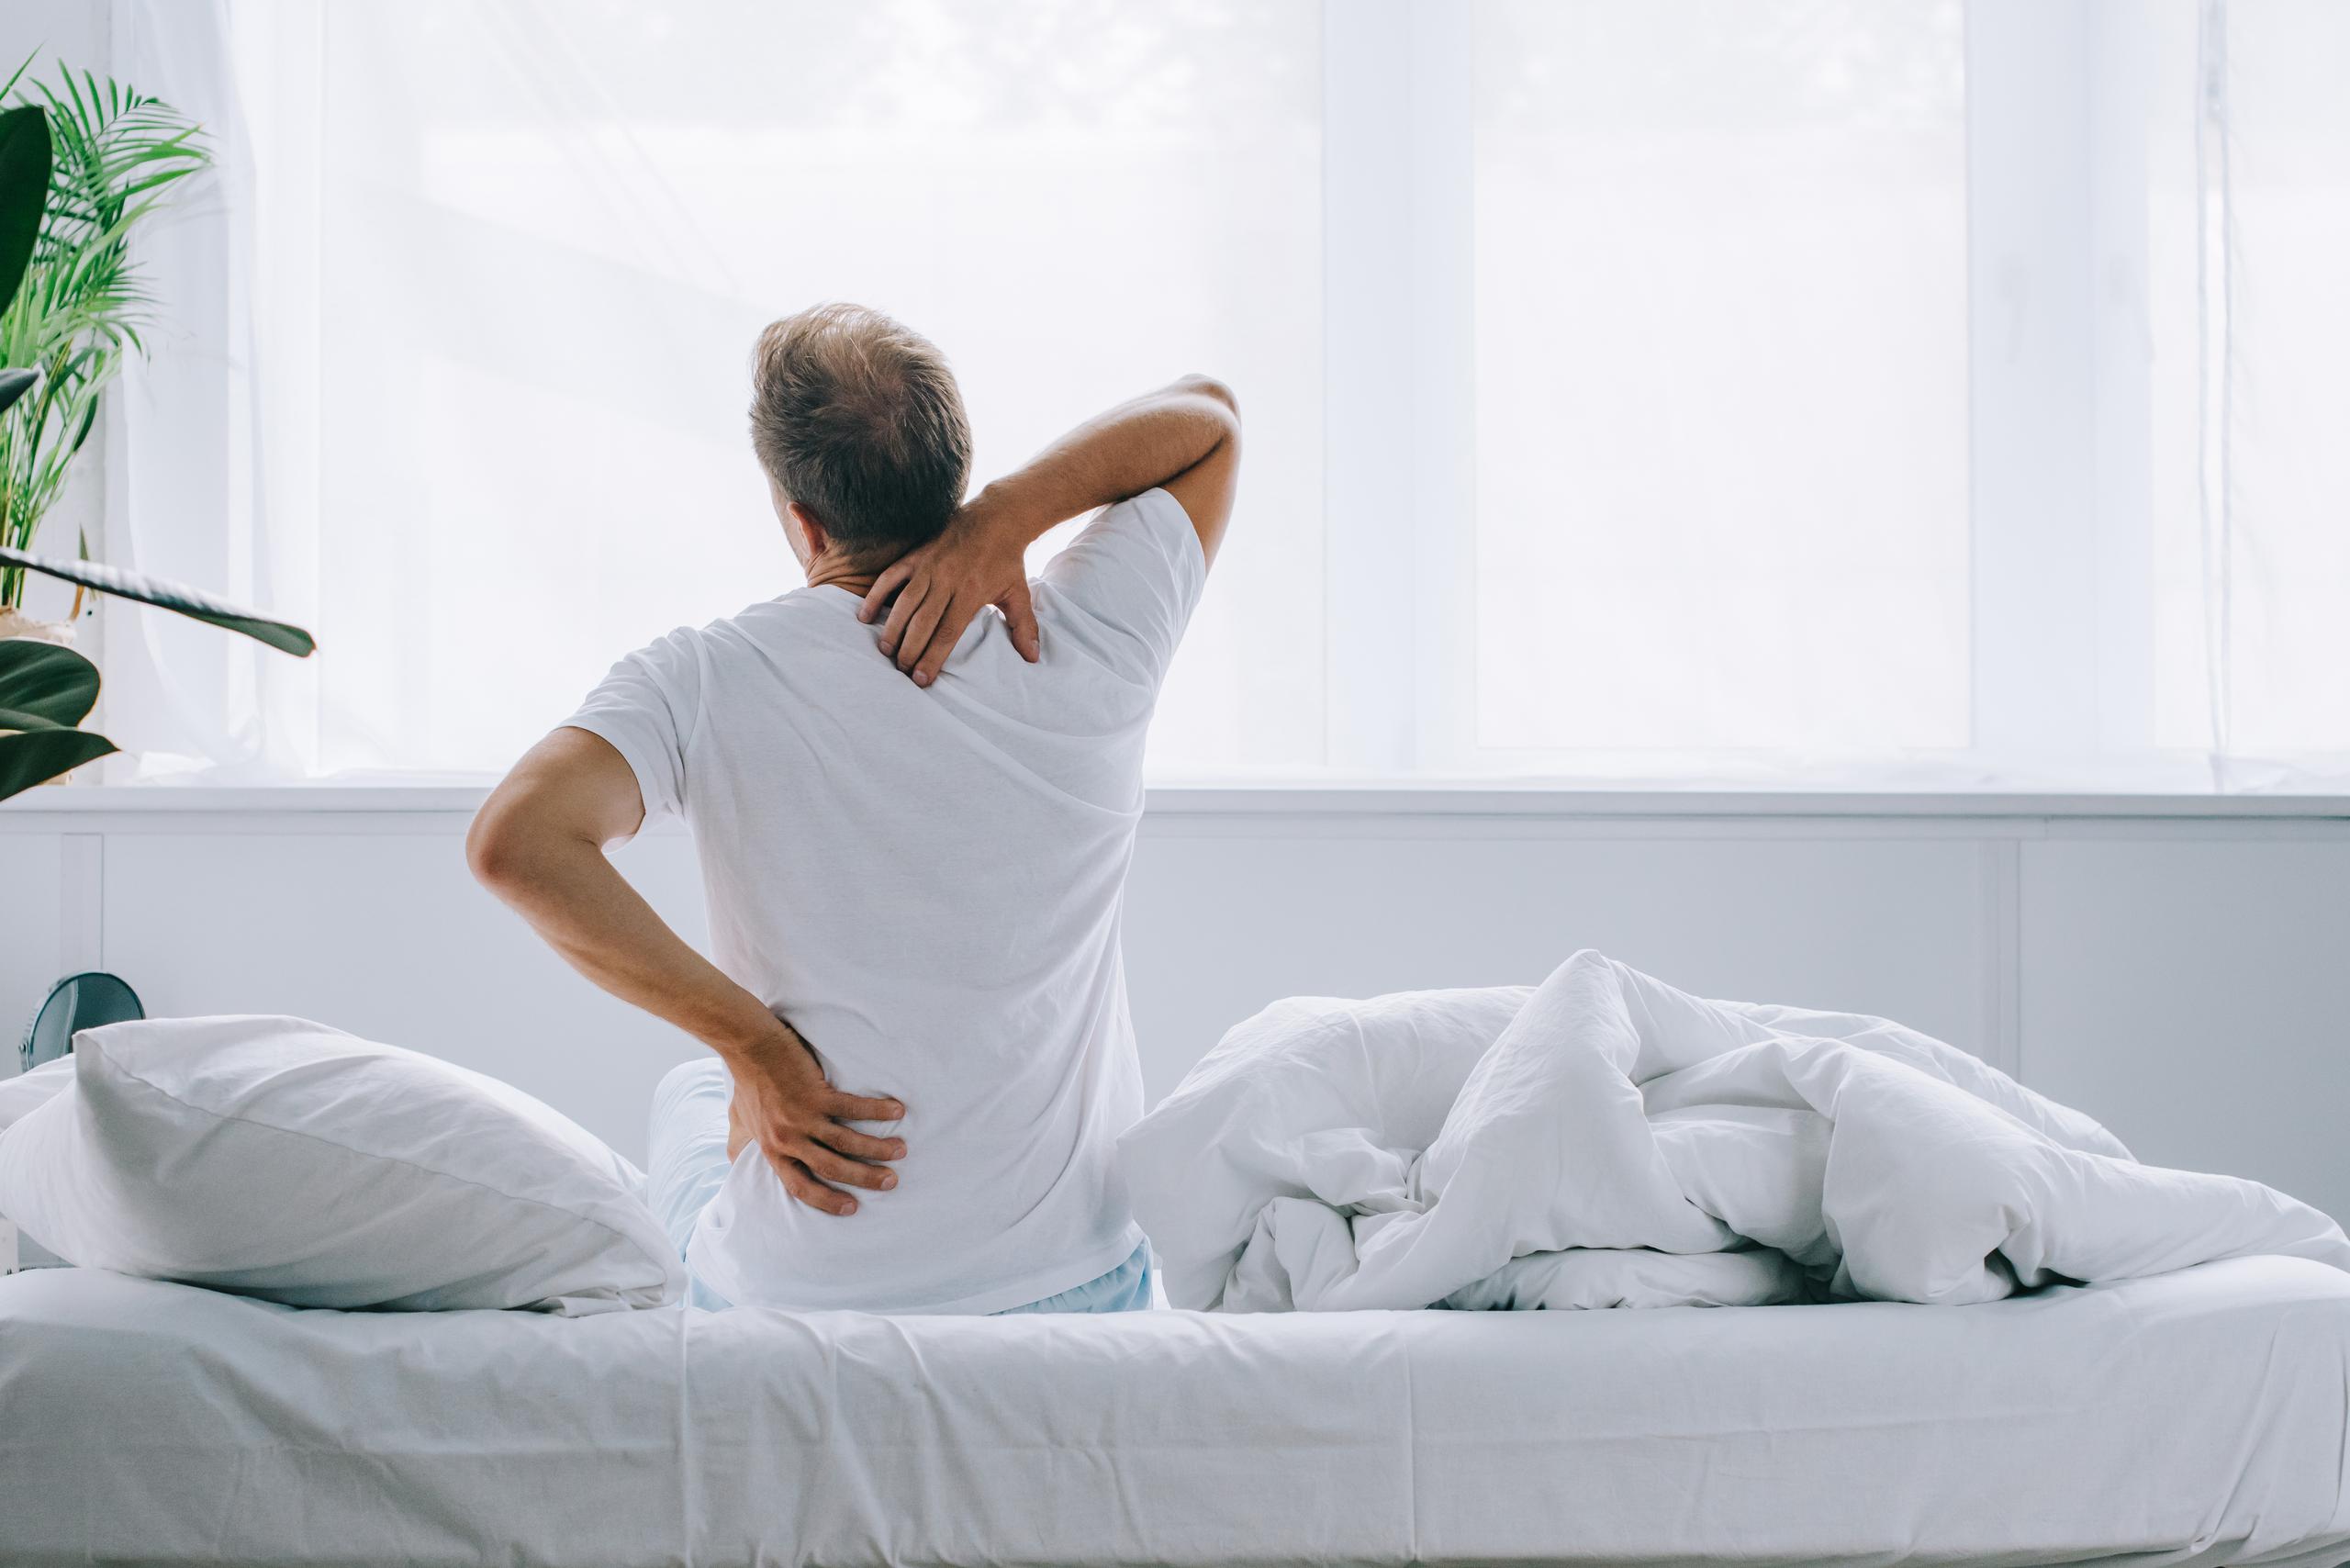 Los dolores de espalda son muy frecuentes entre las personas de edad avanzada.